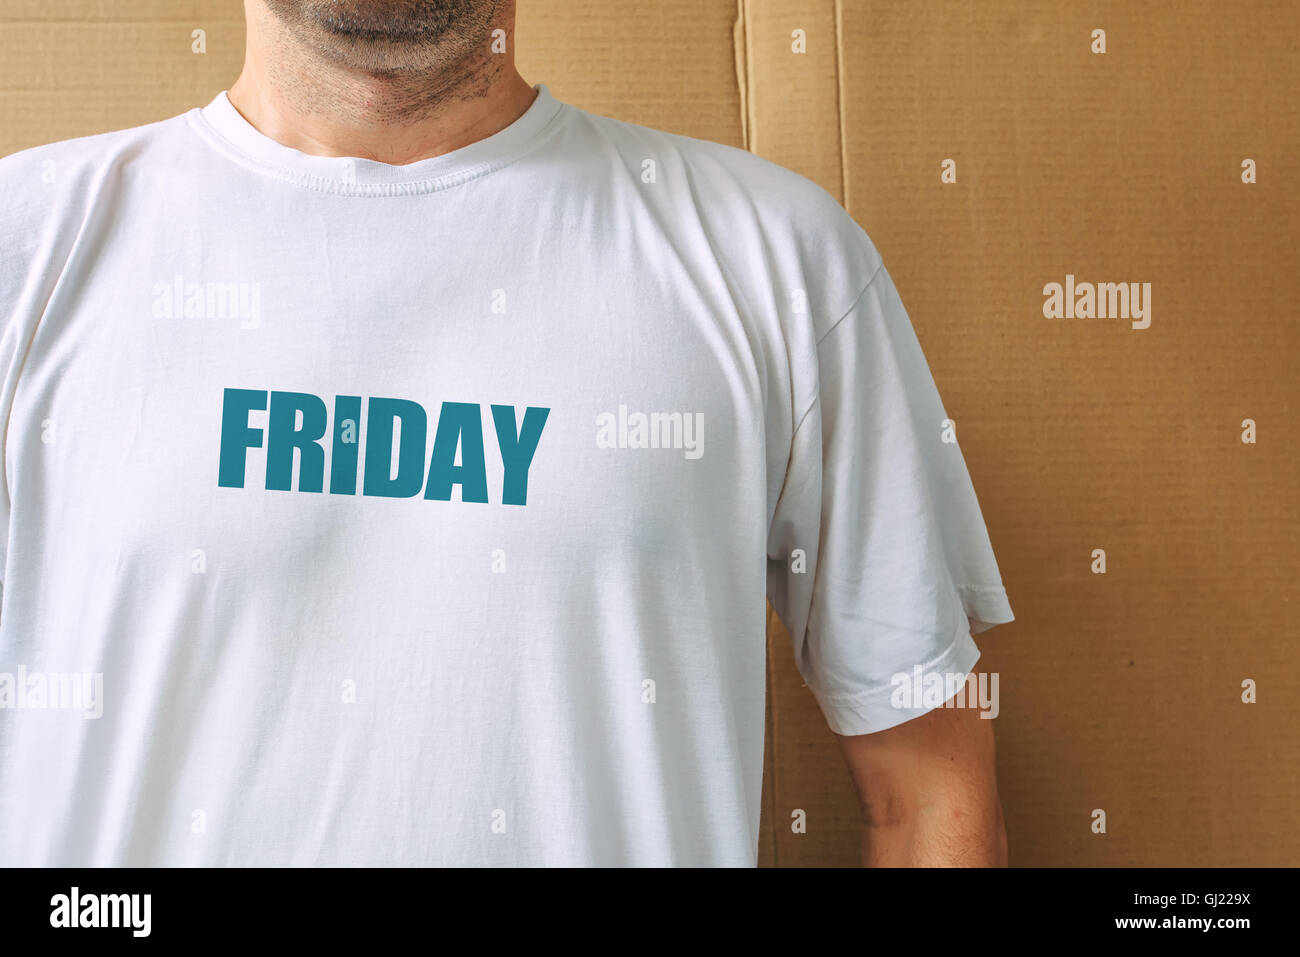 Los días de la semana - driday, hombre vestido con camiseta blanca con el nombre del quinto día laborable impreso Foto de stock